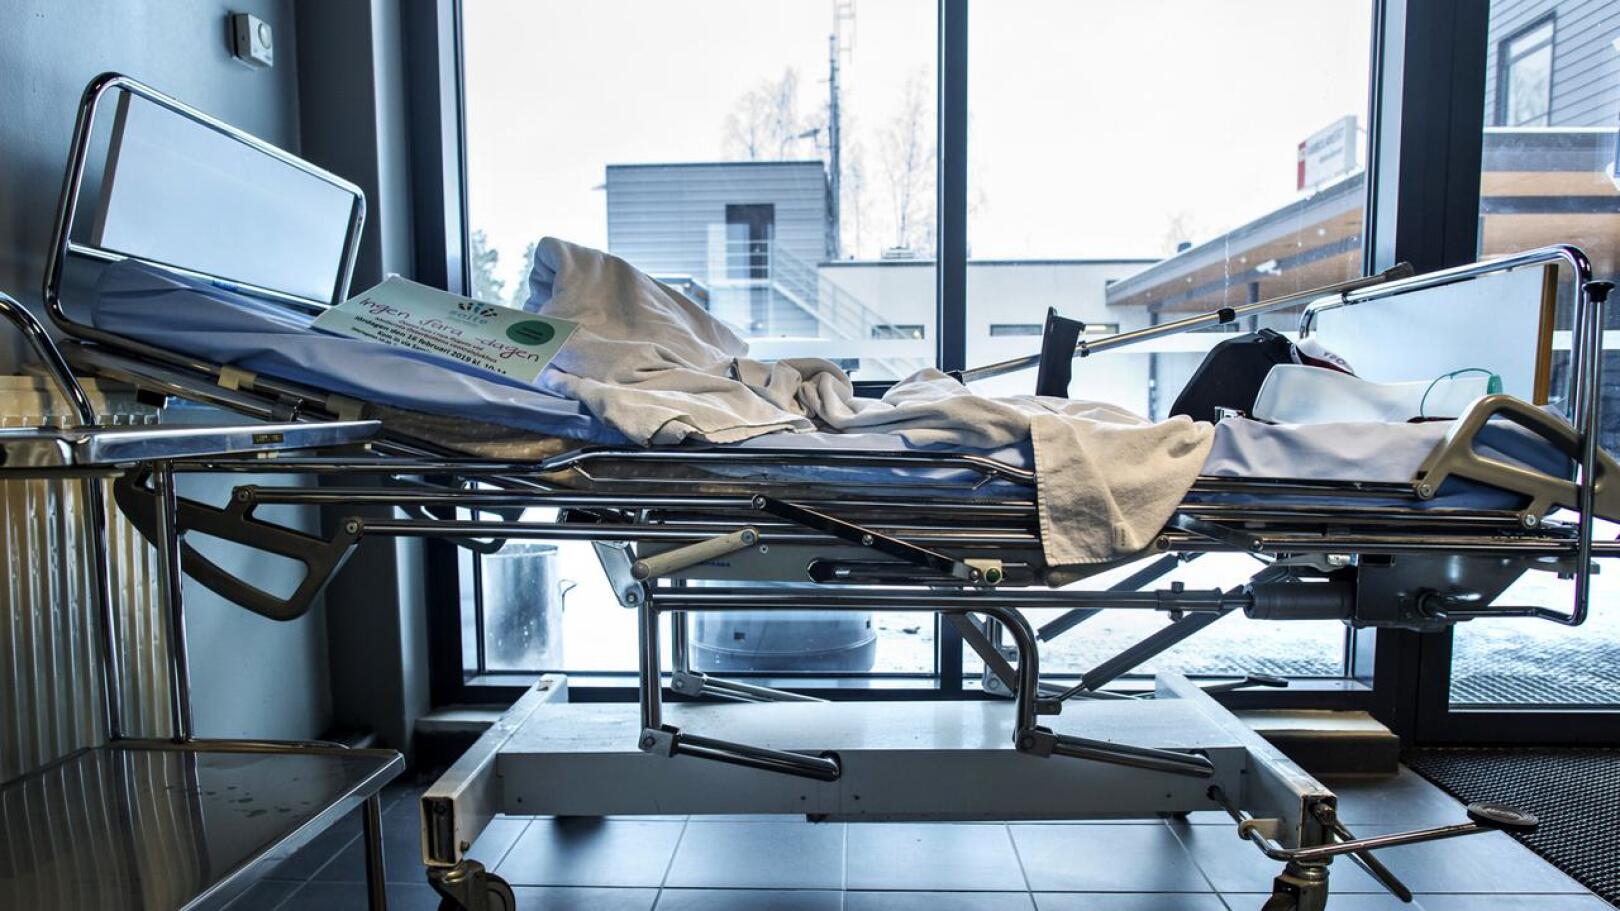 Soite on ensi viikolla käynnistämässä elektiivistä leikkaustoimintaa Keski-Pohjanmaan keskussairaalassa Kokkolassa. Osa sairaalan leikkaussaleista pidetään koronatilanteen varalta kuitenkin valmiustilassa tehohoitoon soveltuvina.